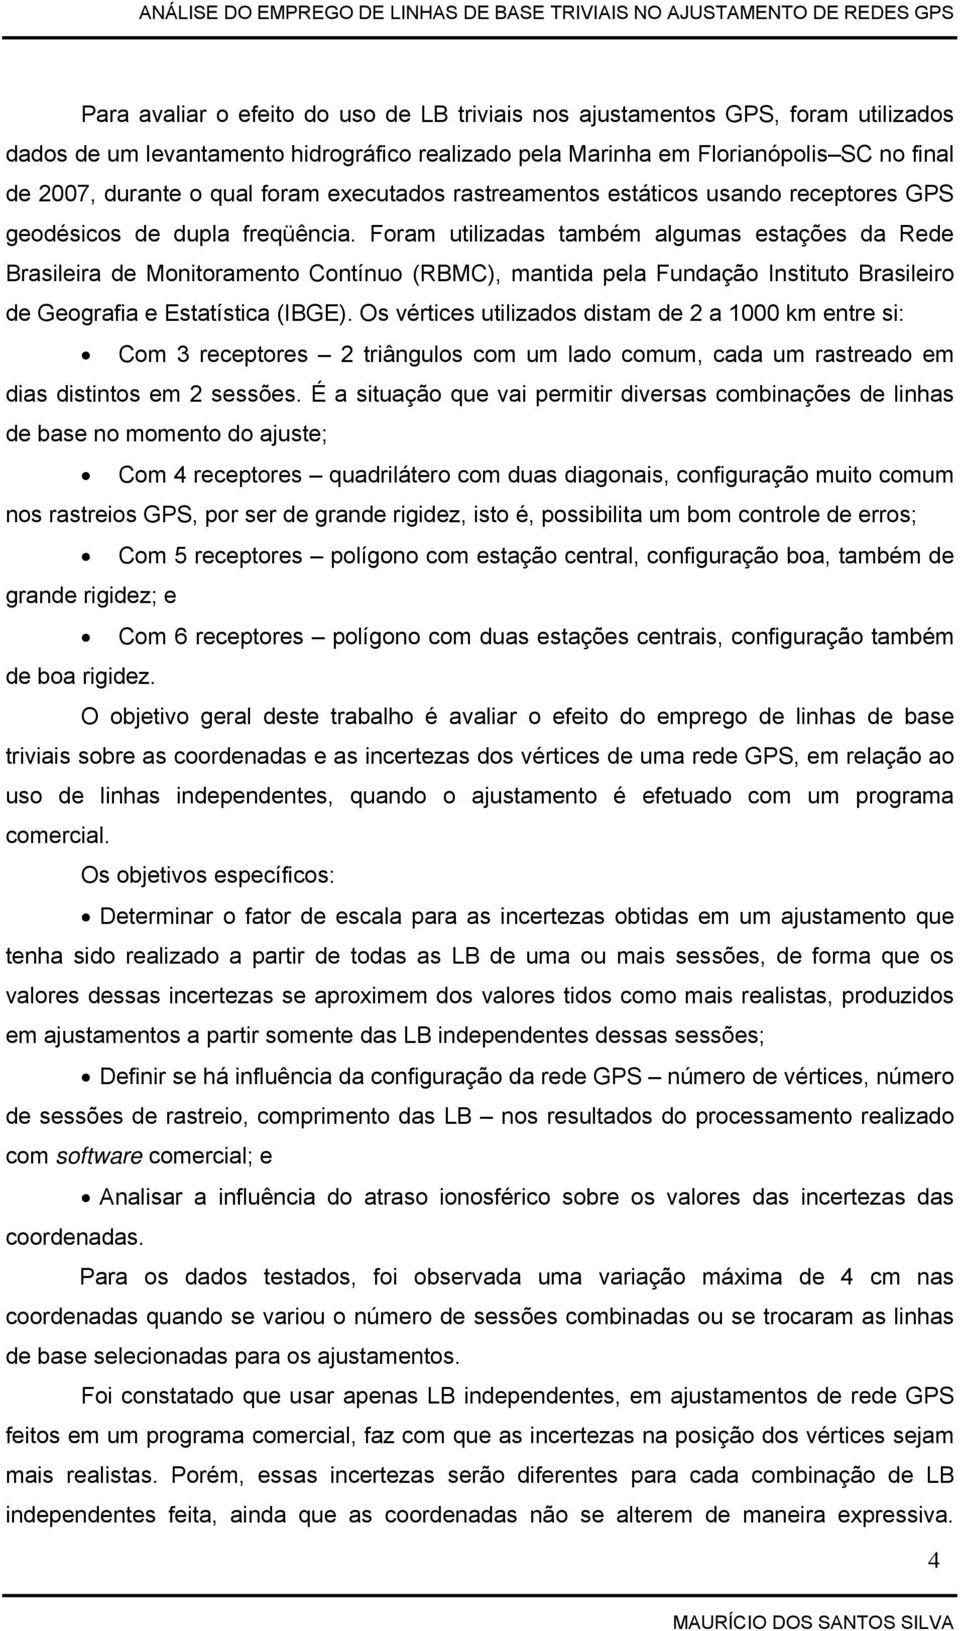 Foram utilizadas também algumas estações da Rede Brasileira de Monitoramento Contínuo (RBMC), mantida pela Fundação Instituto Brasileiro de Geografia e Estatística (IBGE).